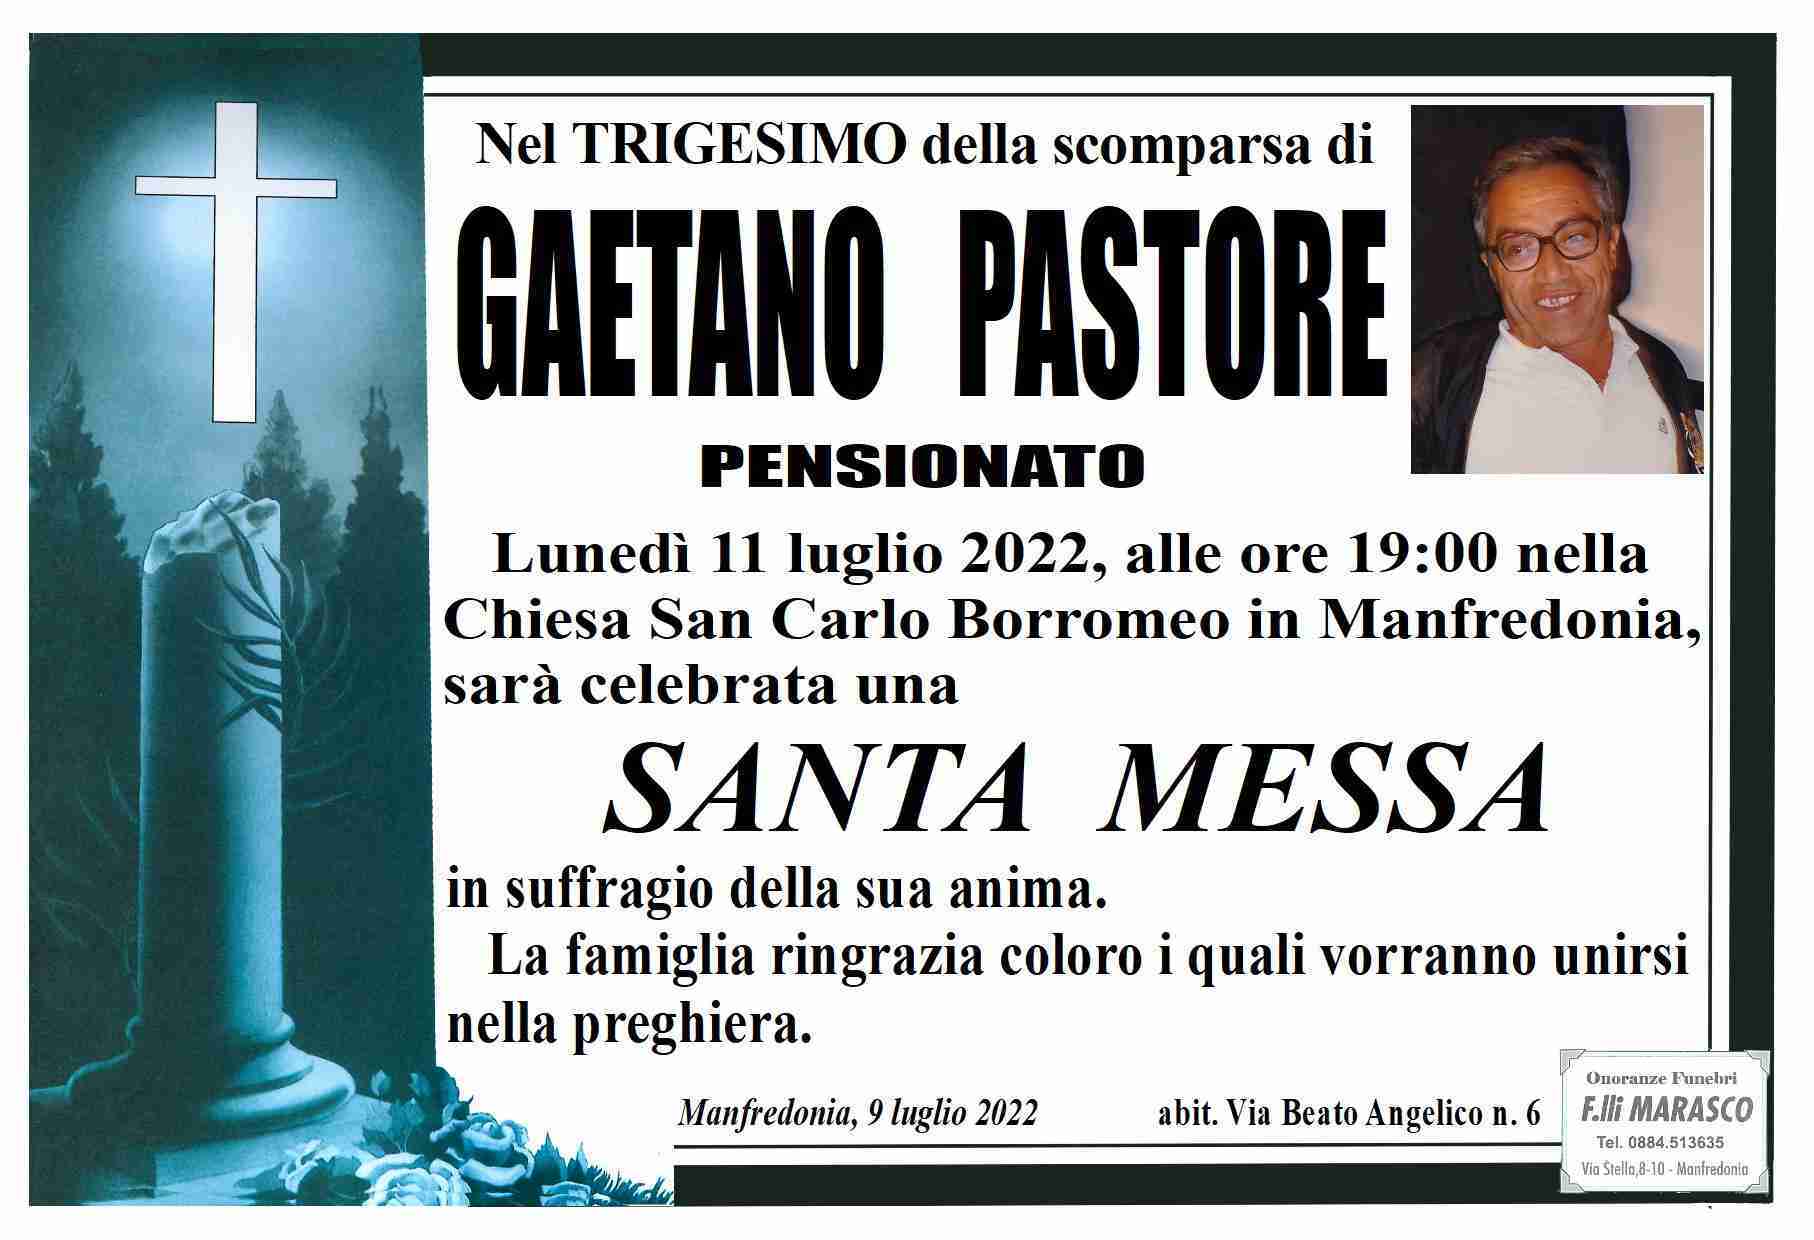 Gaetano Pastore